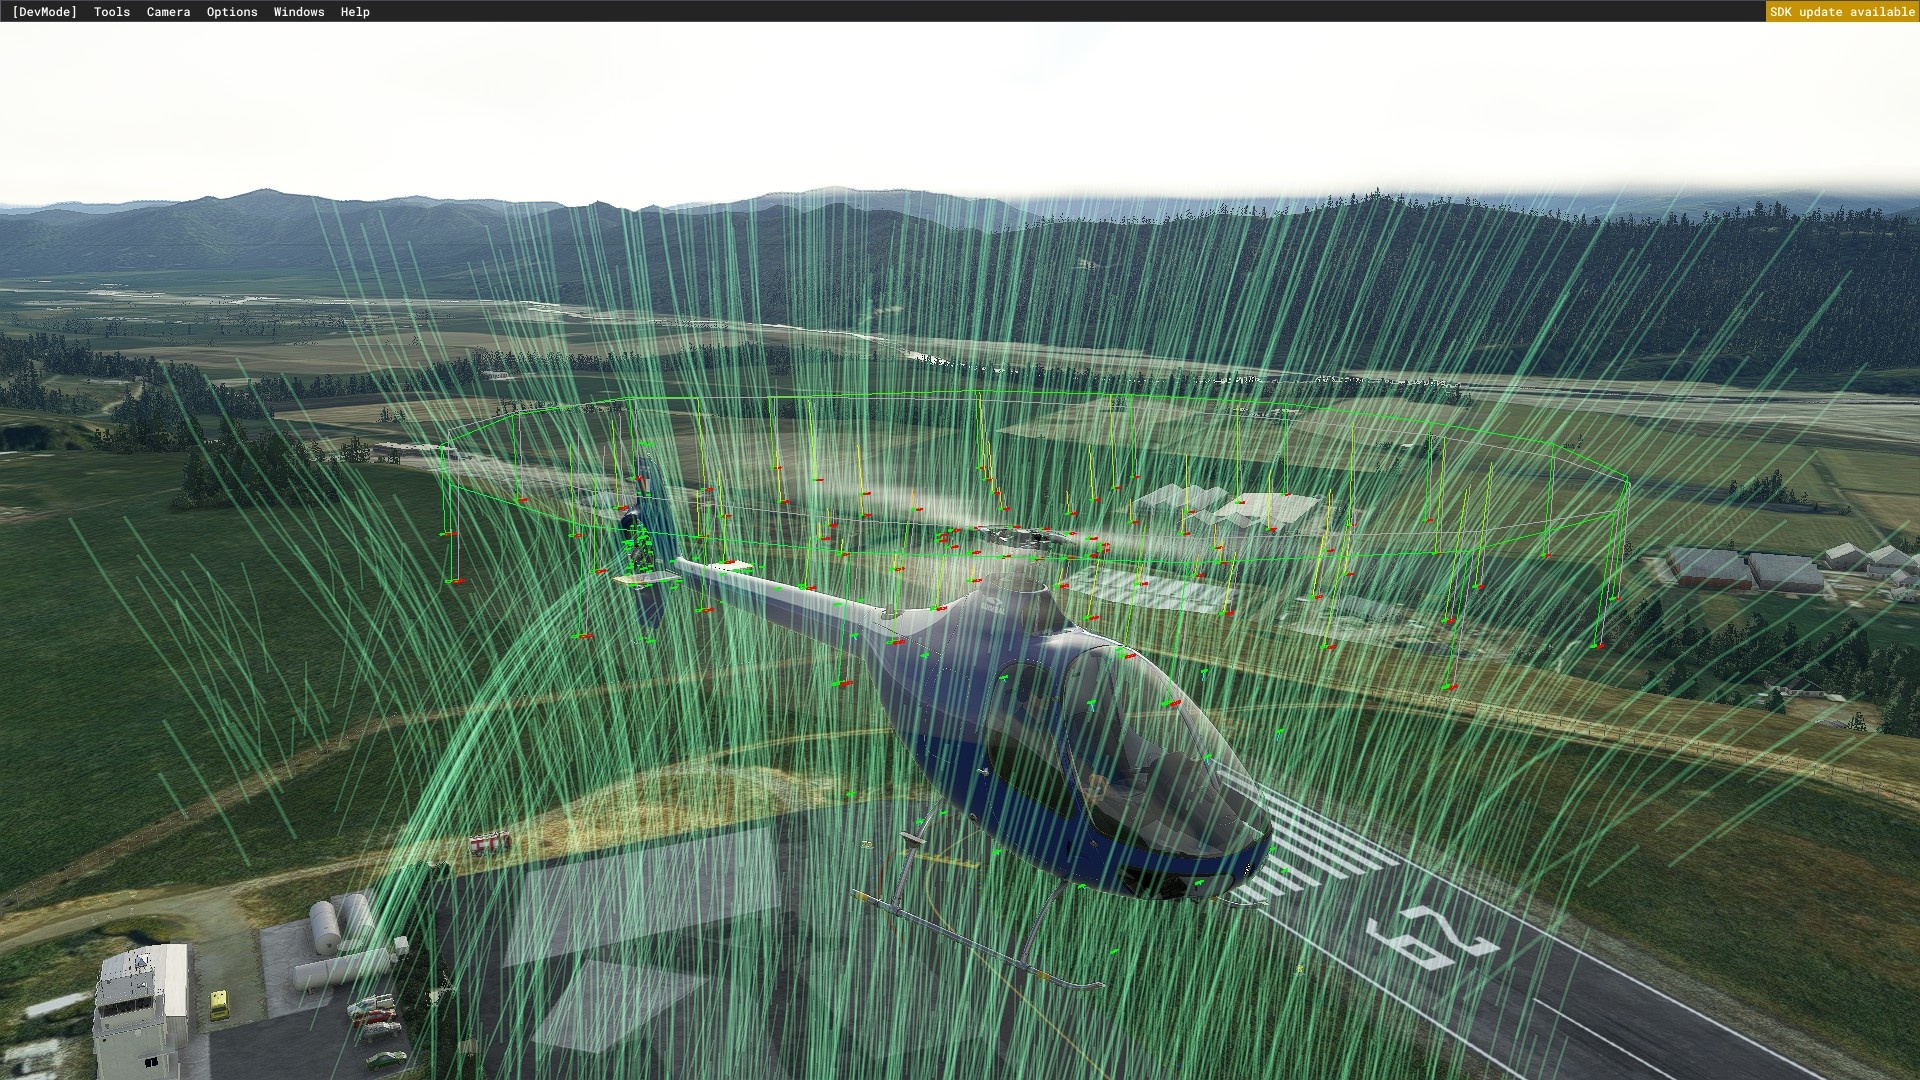 (Incluso sin el modo de desarrollo, la nueva visualización de los flujos de aire en la aeronave está disponible (aquí las líneas azul claro sobre y alrededor del helicóptero))